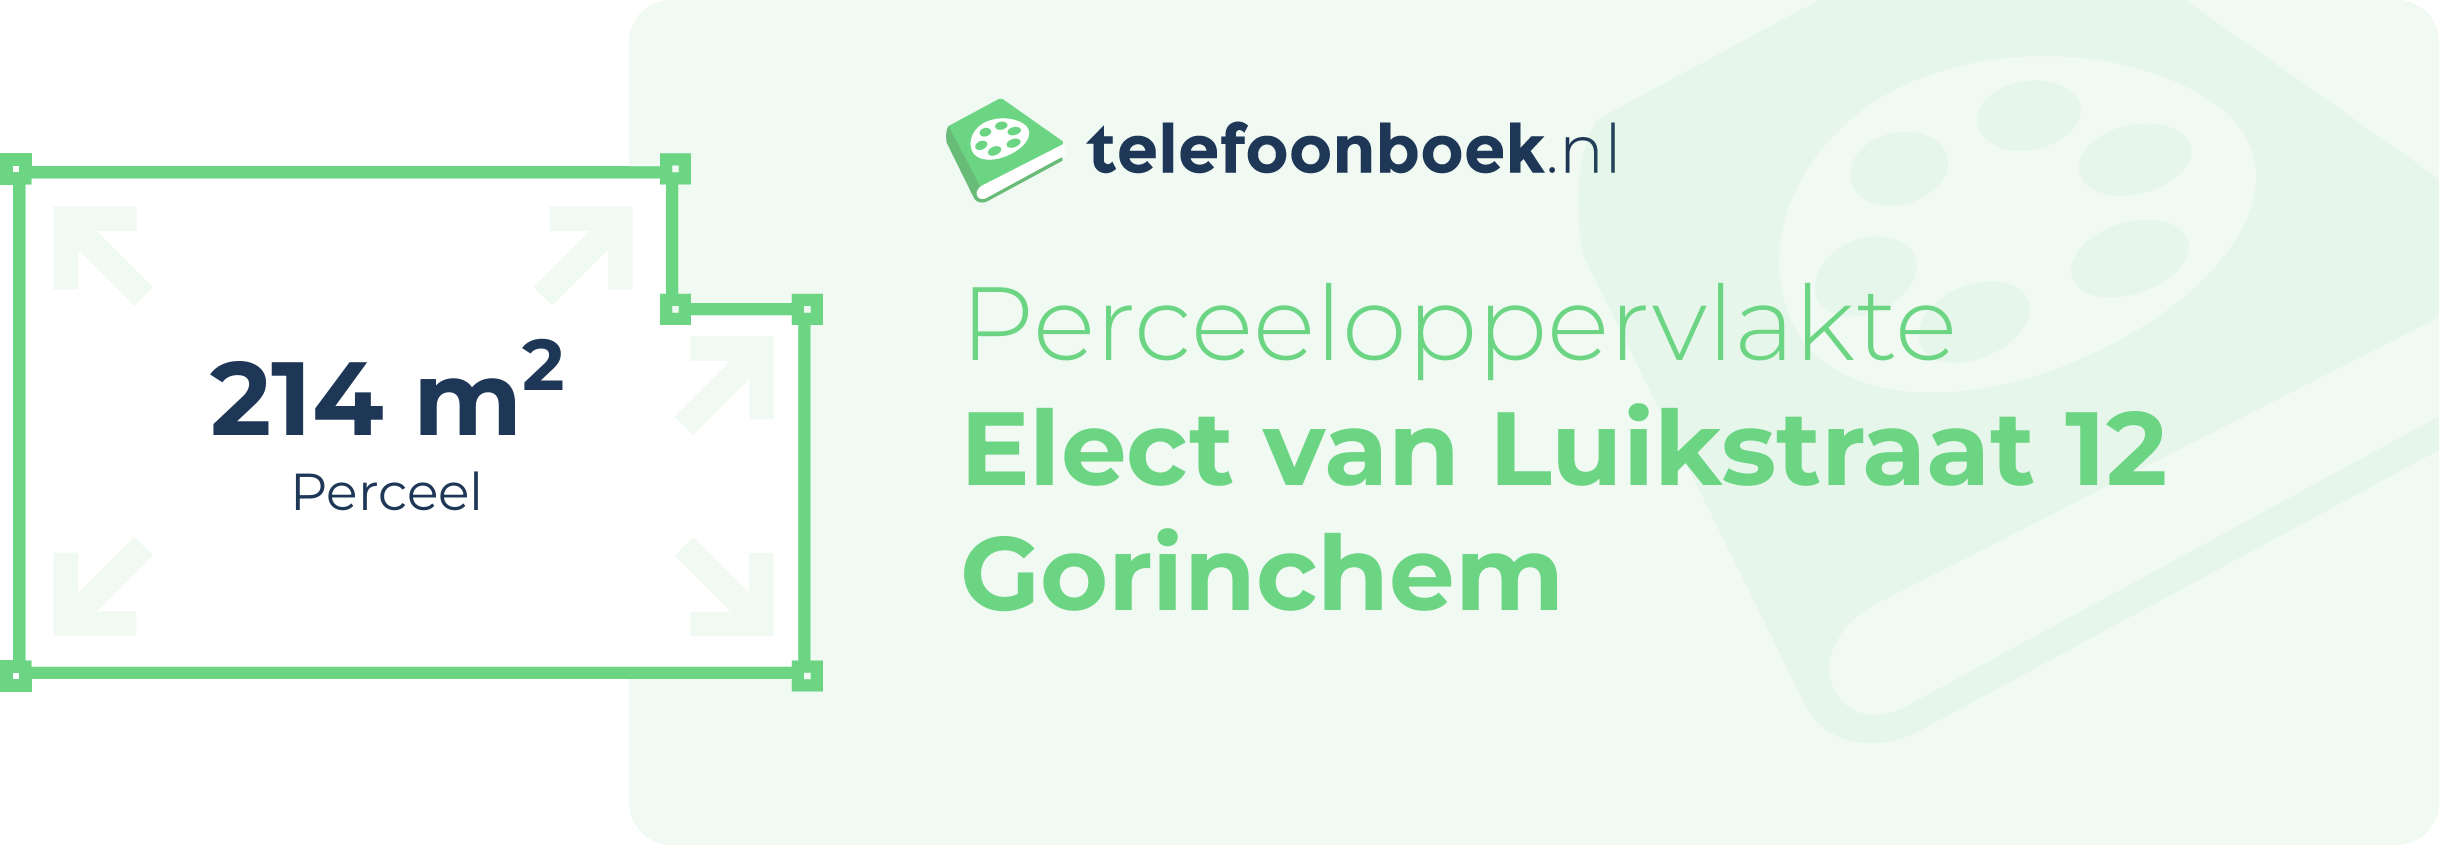 Perceeloppervlakte Elect Van Luikstraat 12 Gorinchem